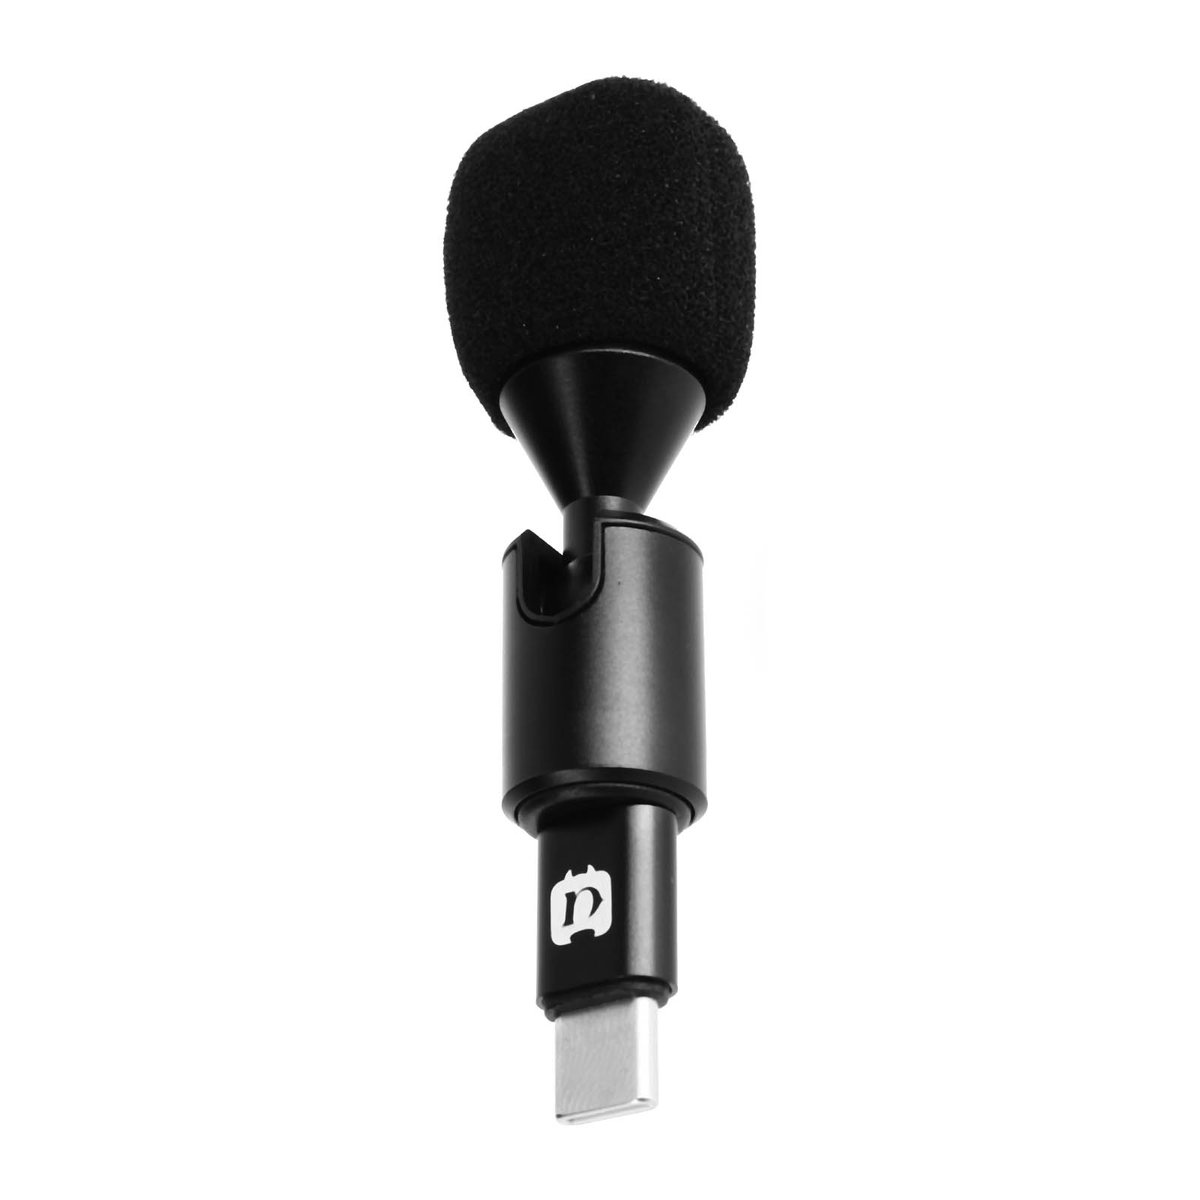 Zdjęcia - Mikrofon Puluz  do smartfona, zlacze USB-C, obrotowy z oslona przeciwwiatrowa - c 